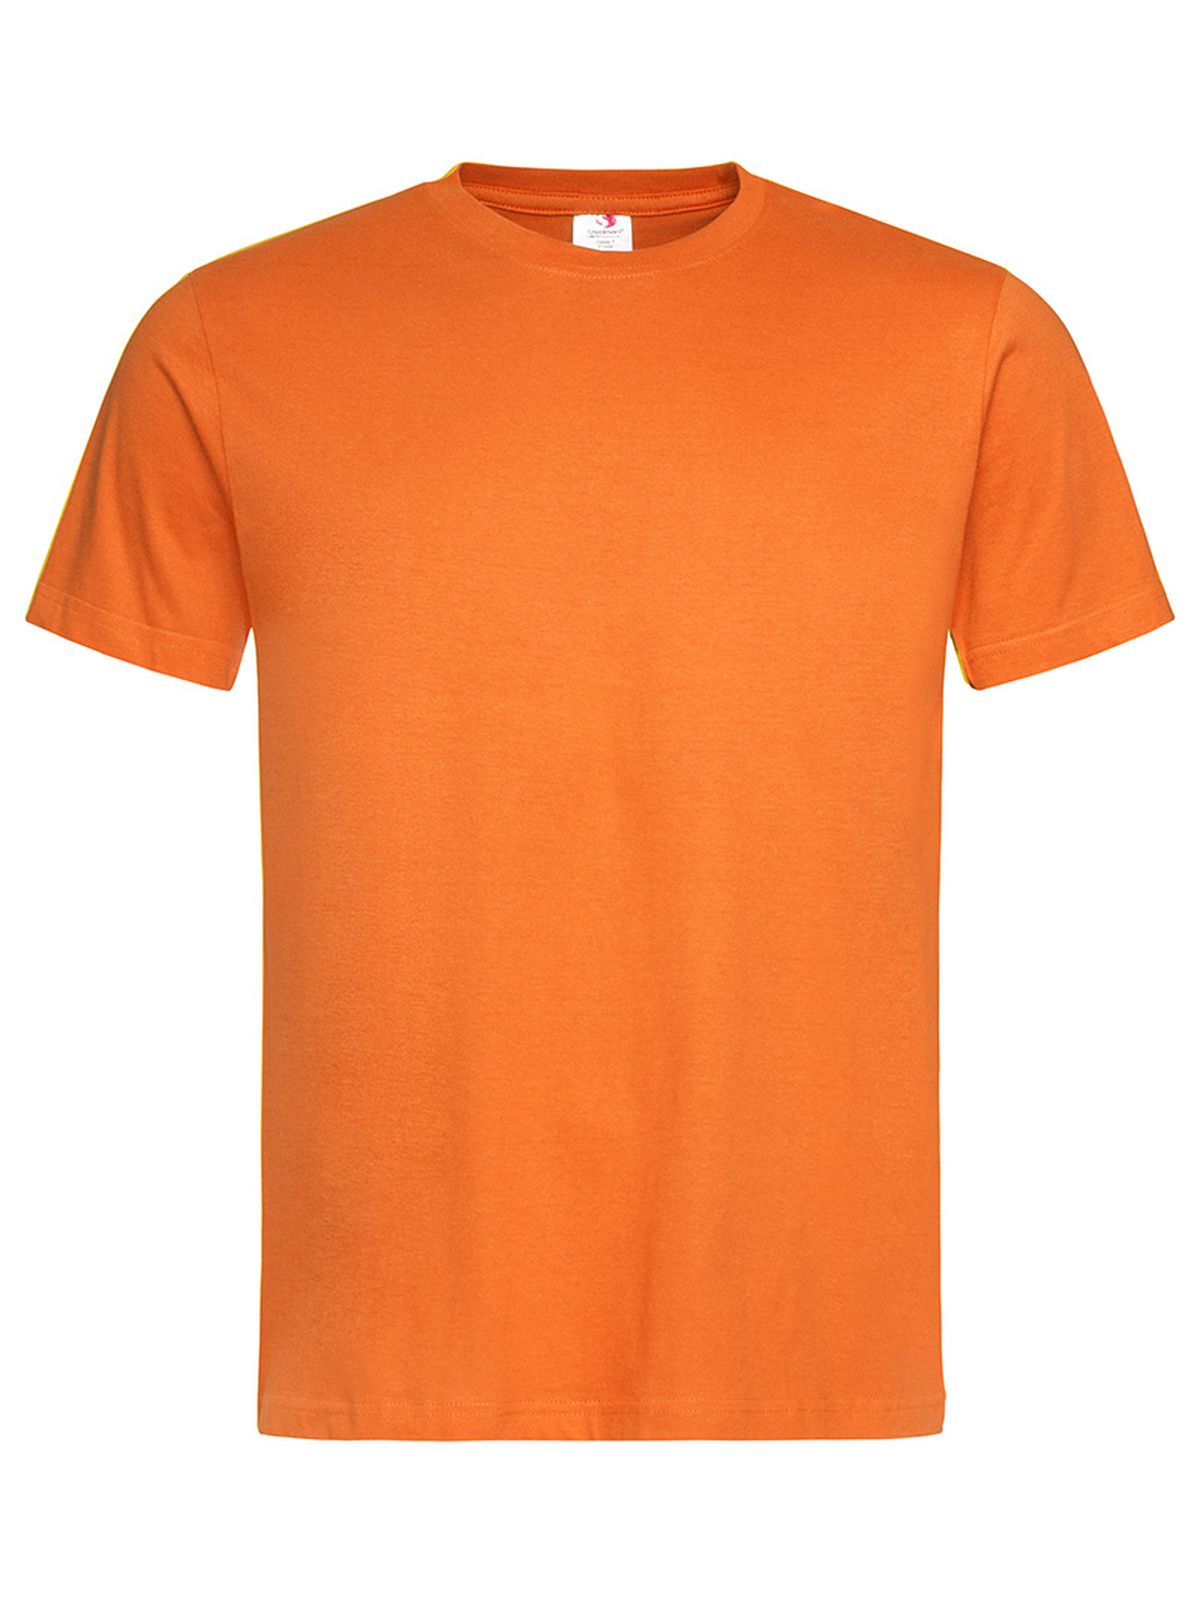 classic-t-unisex-orange.webp